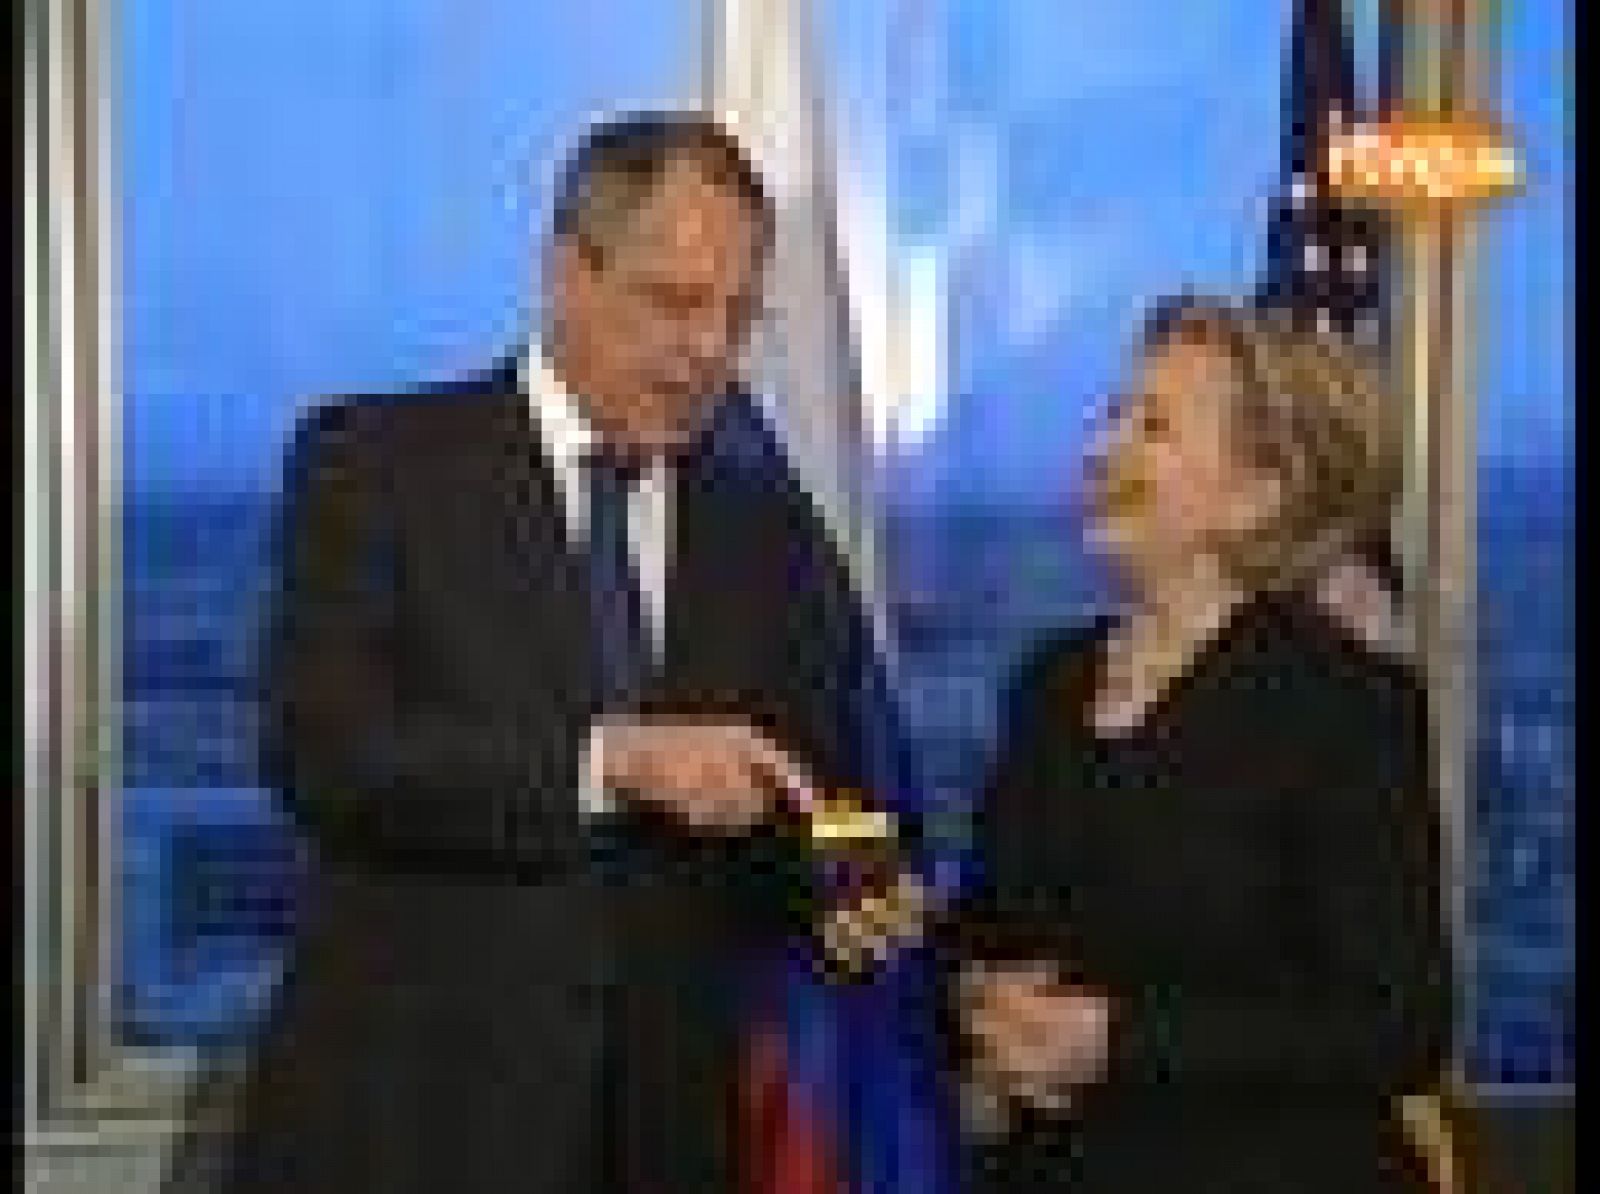 La secretaria de Estado de EE.UU. se ha reunido en Ginebra con el ministro ruso de Asuntos Exteriores, Serguei Lavrov, y le ha regalado un botón para 'resetear' de manera simbólica las relaciones entre ambos países.